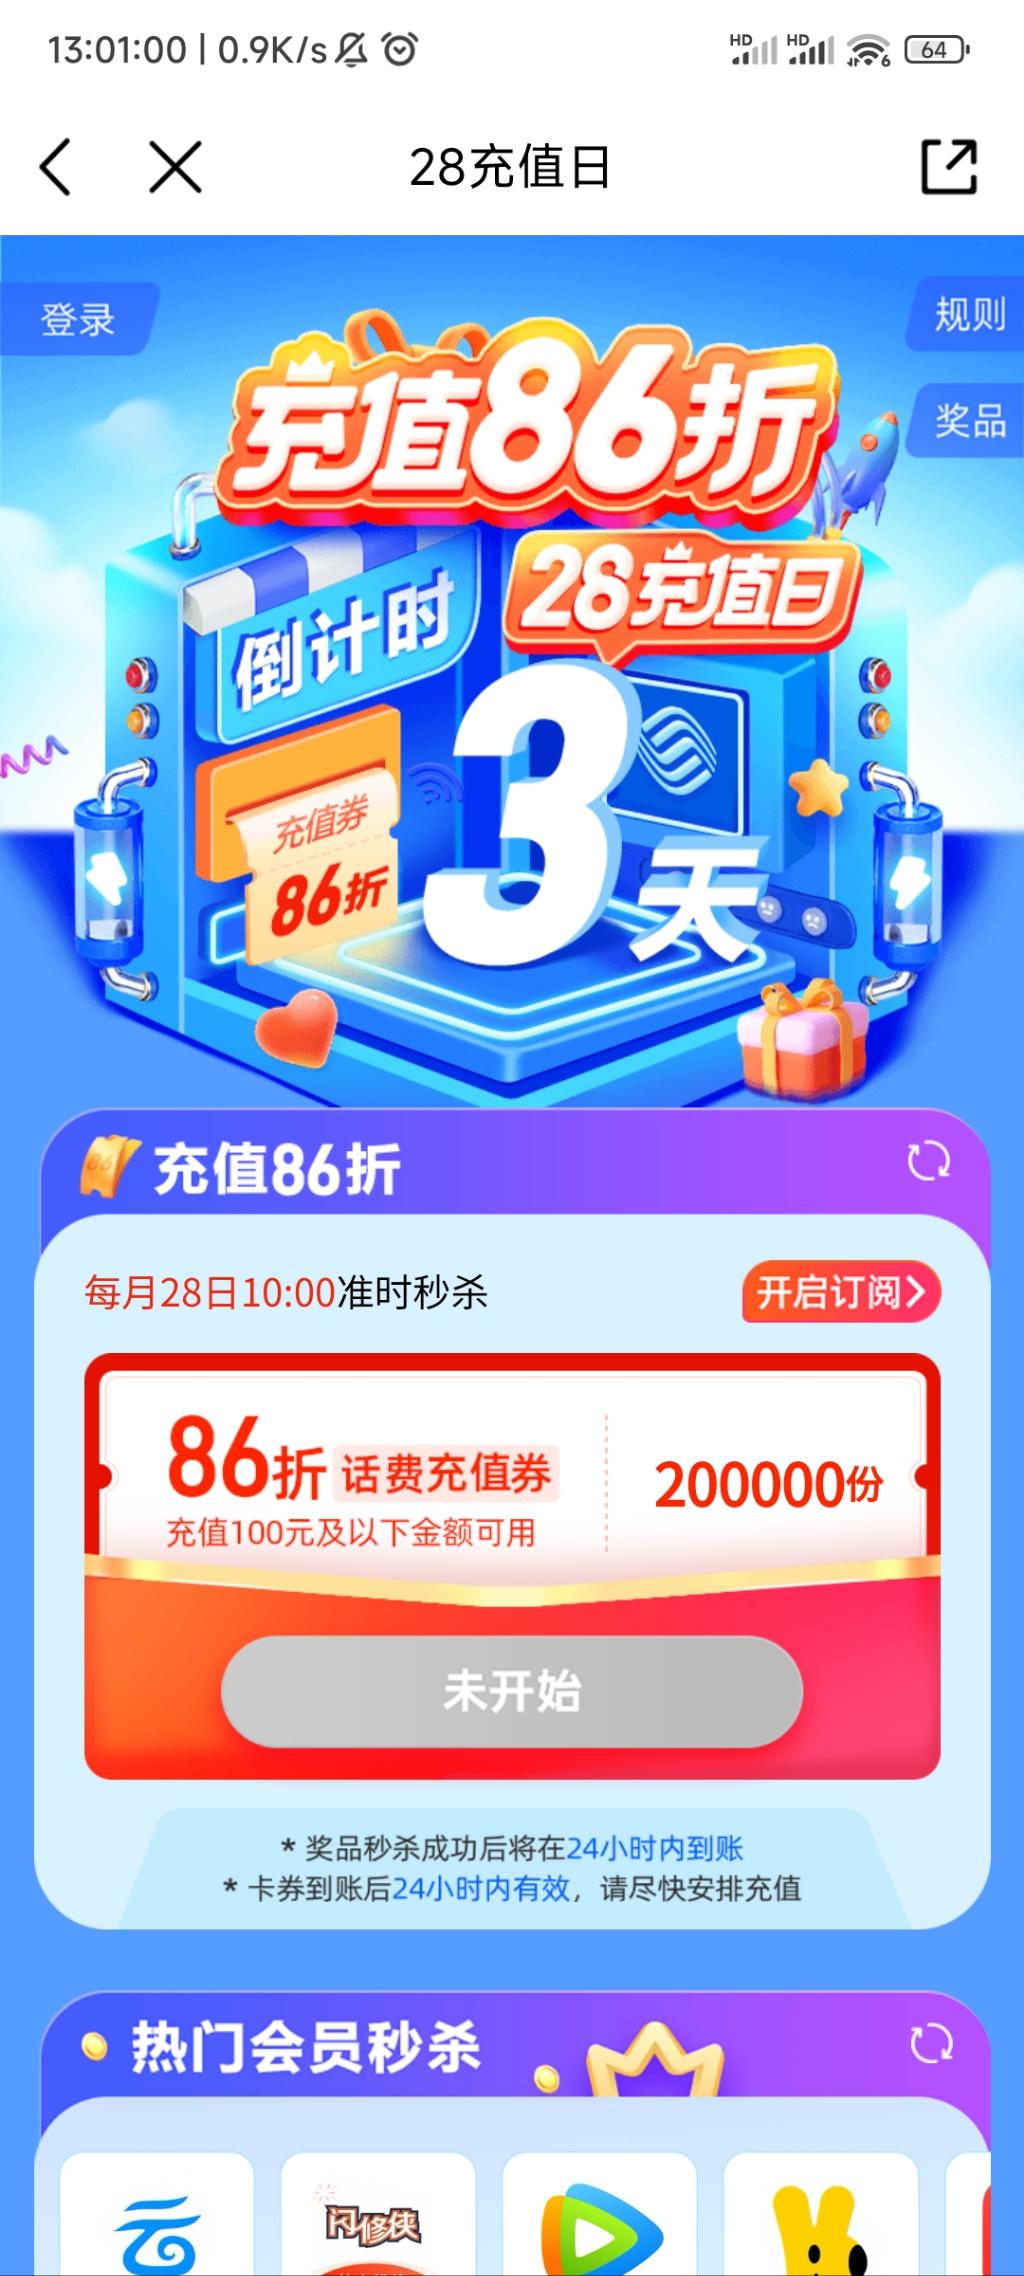 28号中国移动app抢86折话费